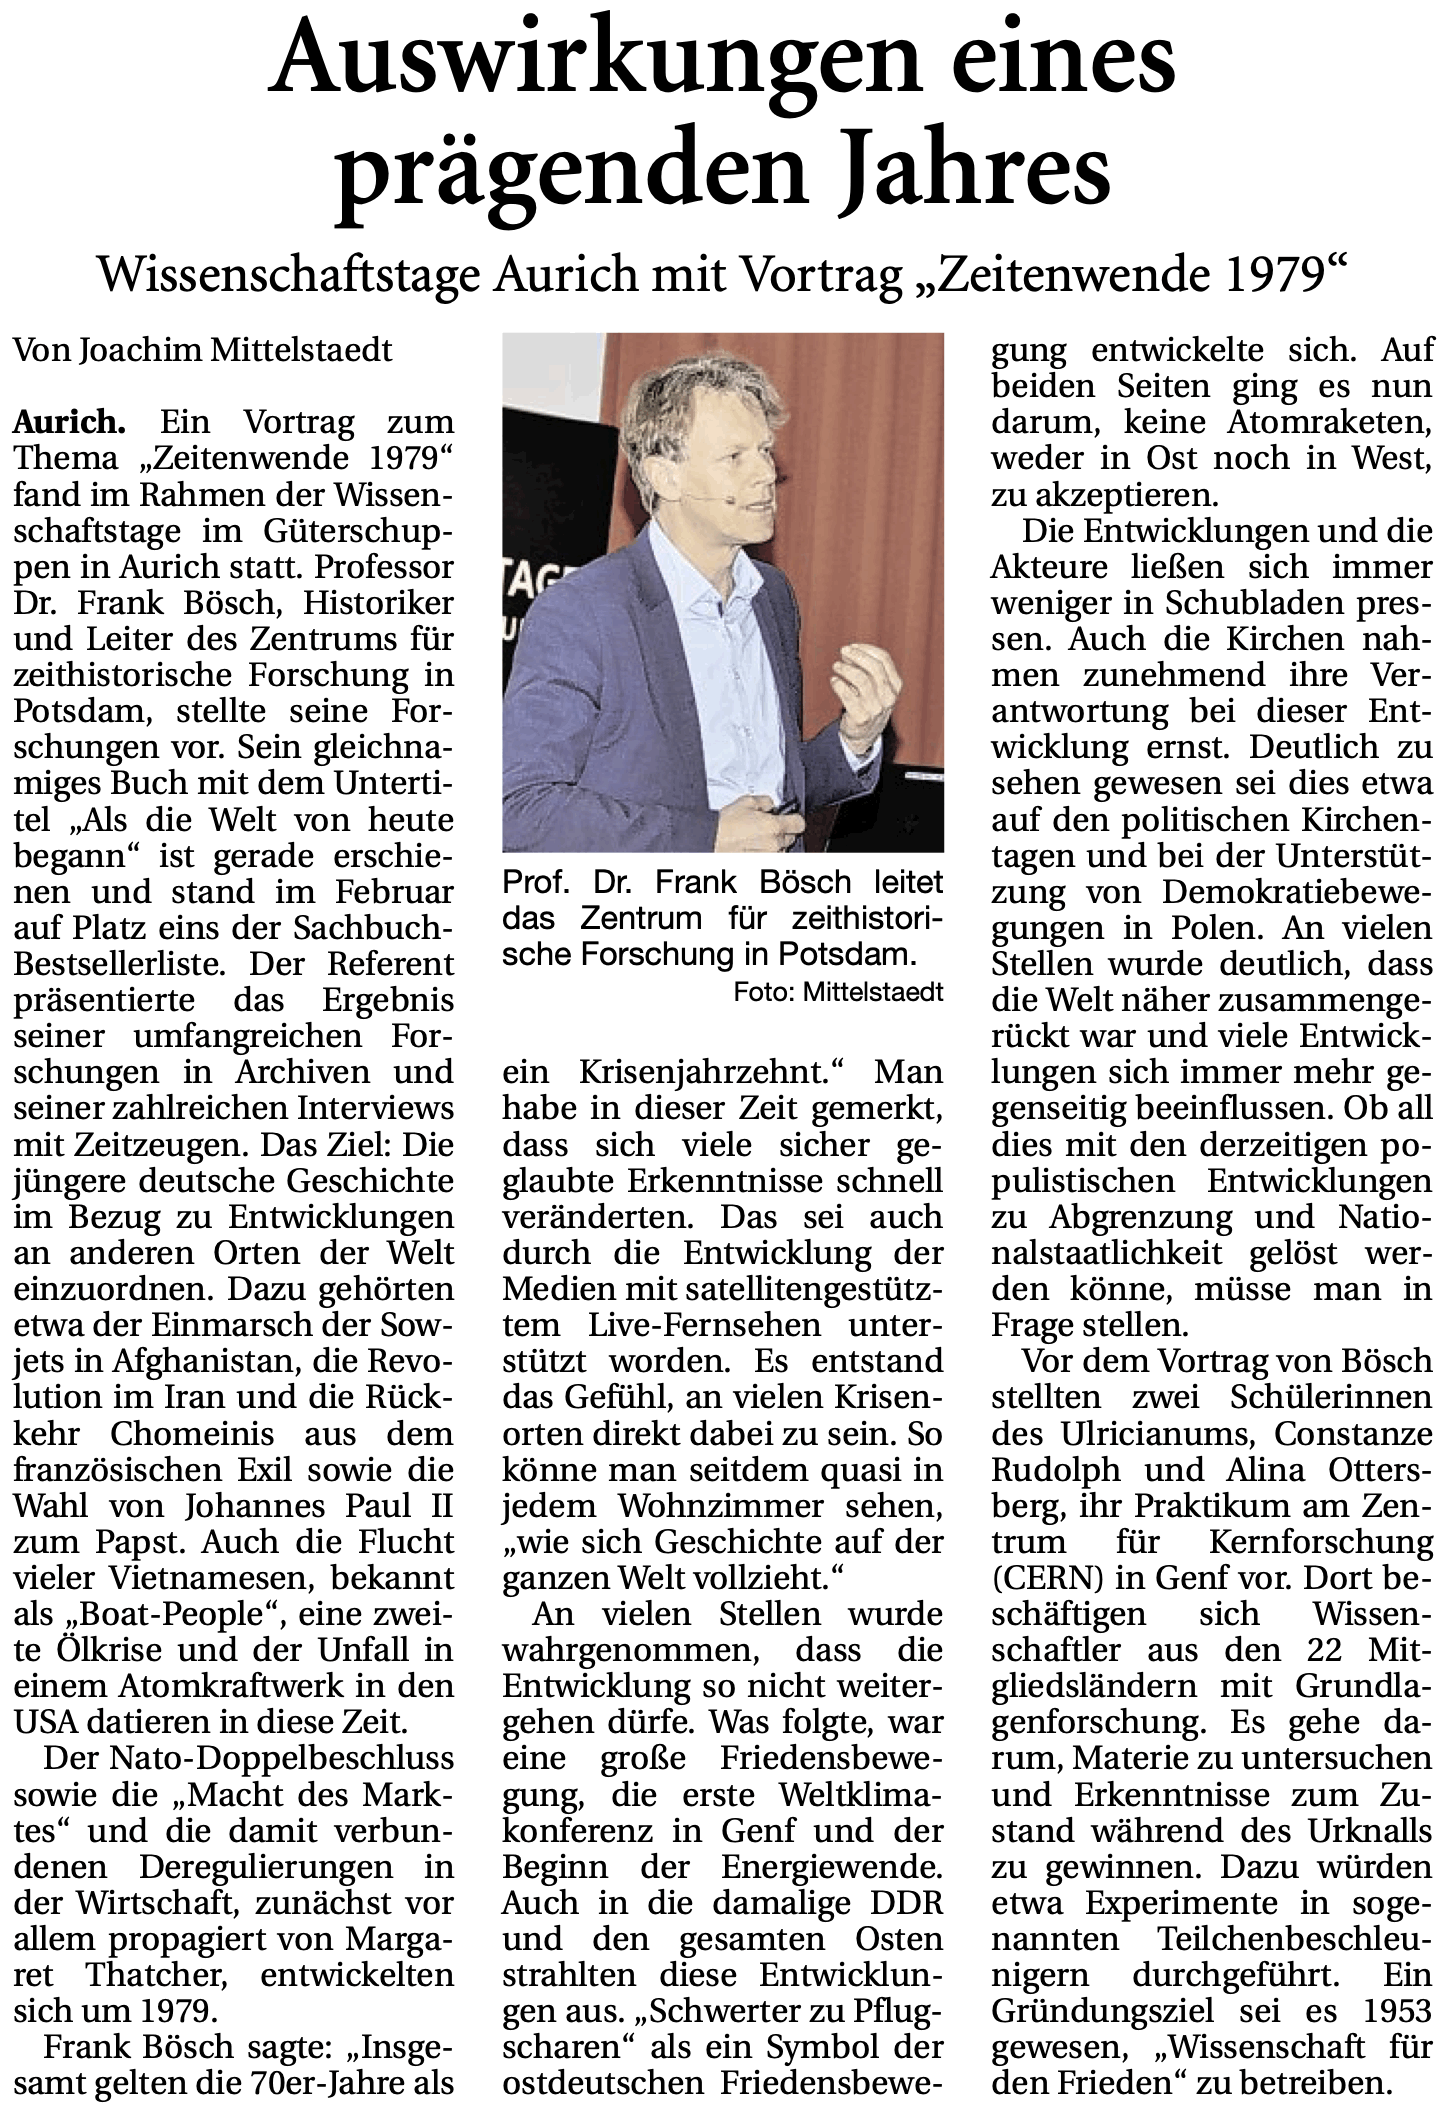 Artikel der Ostfriesischen Nachrichten vom 04.03.2019 über den Vortrag von Prof. Dr. Frank Bösch bei den 29. Auricher Wissenschaftstagen (E-Paper-Version), 485 k